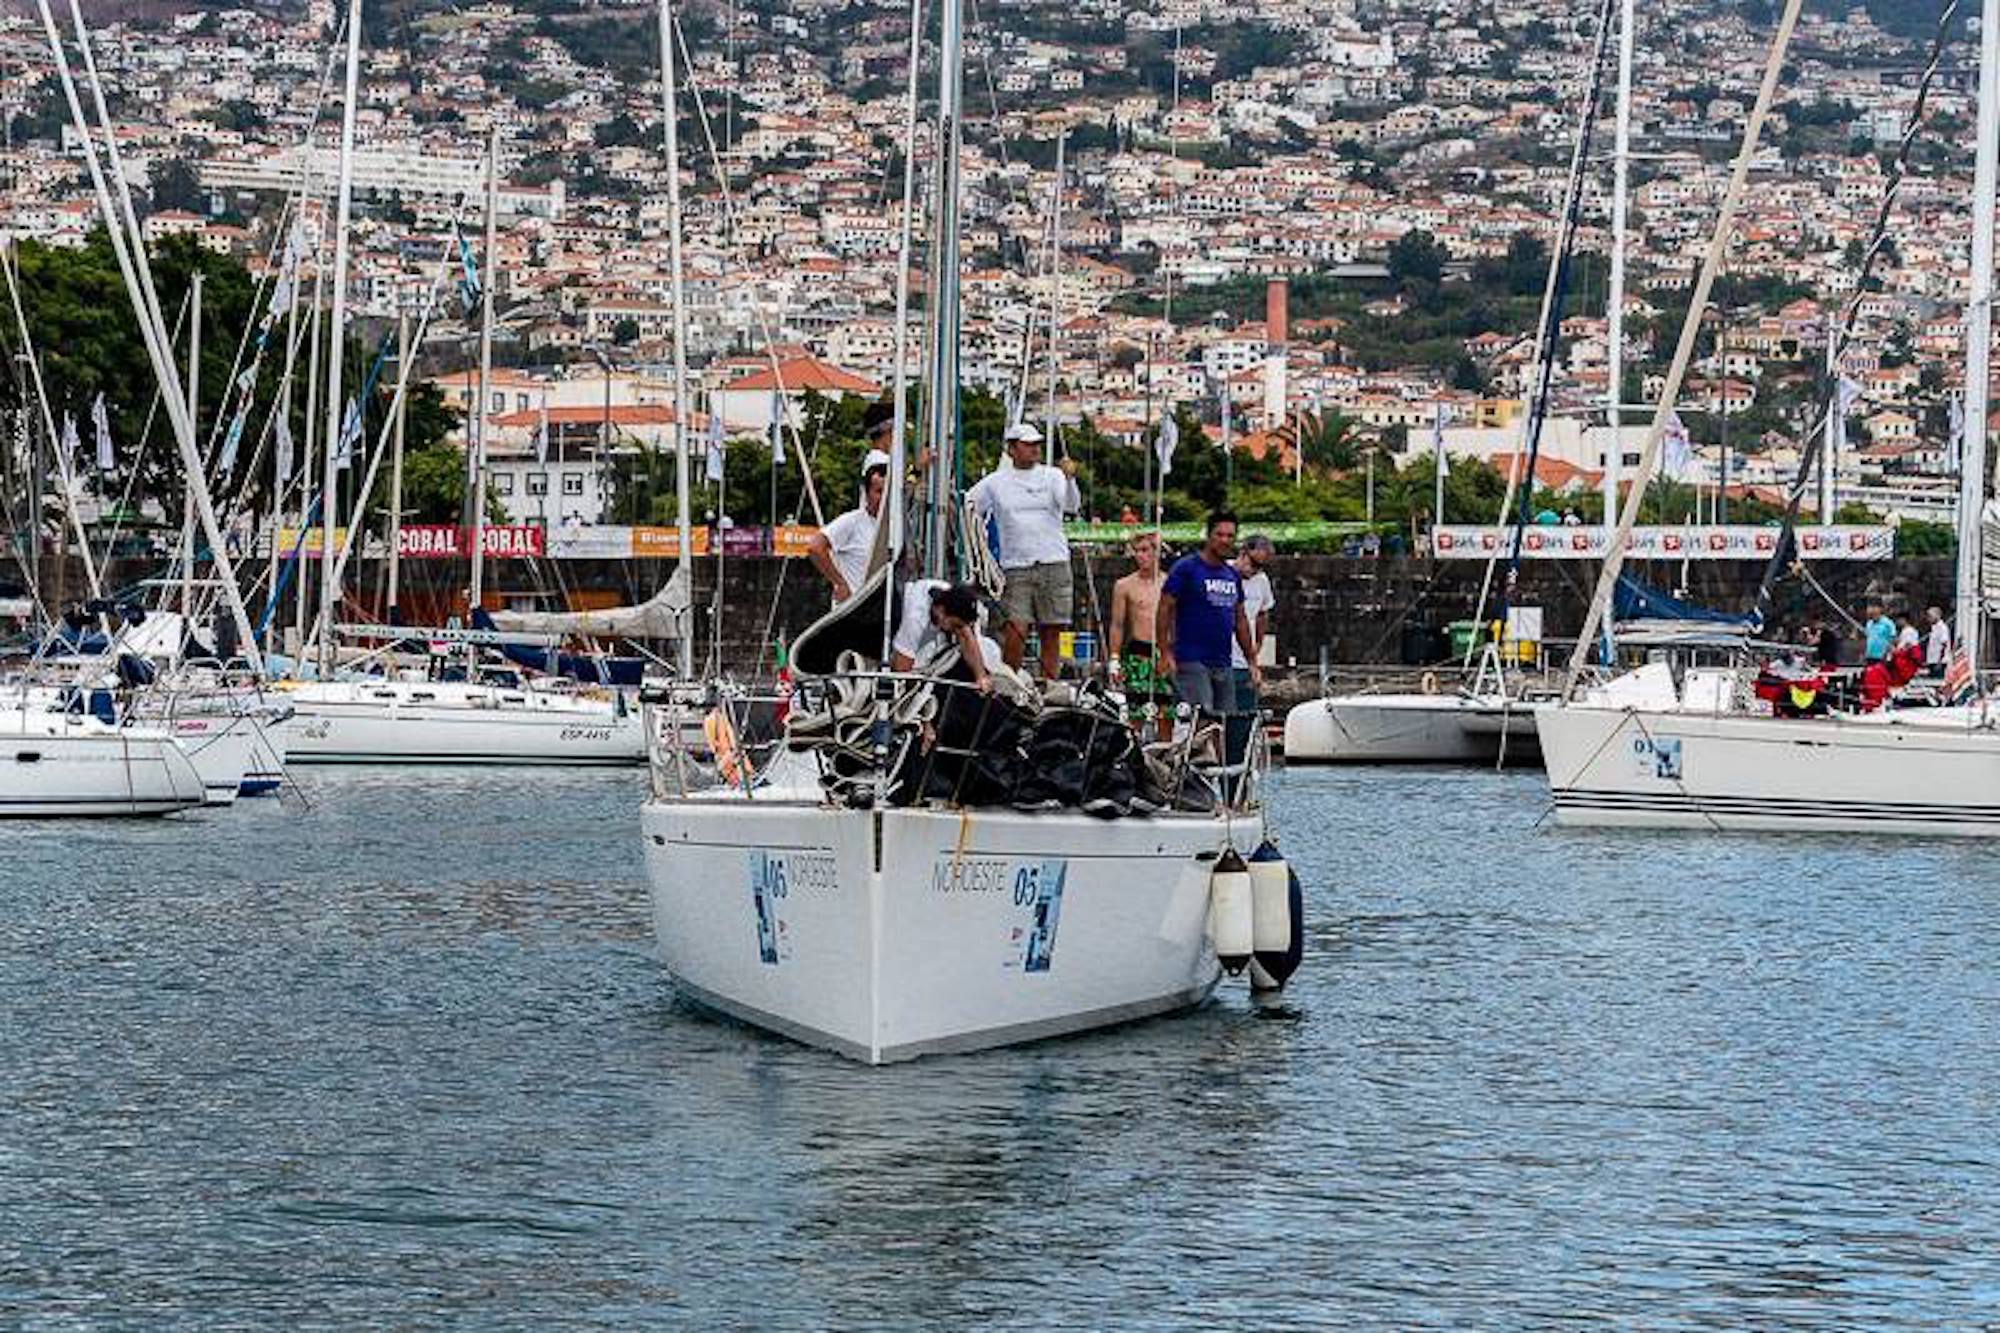 Os nossos associados e velejadores da classe Cruzeiro, participam nas provas do Campeonato Regional e em provas internacionais como a Regata Canárias-Madeira.